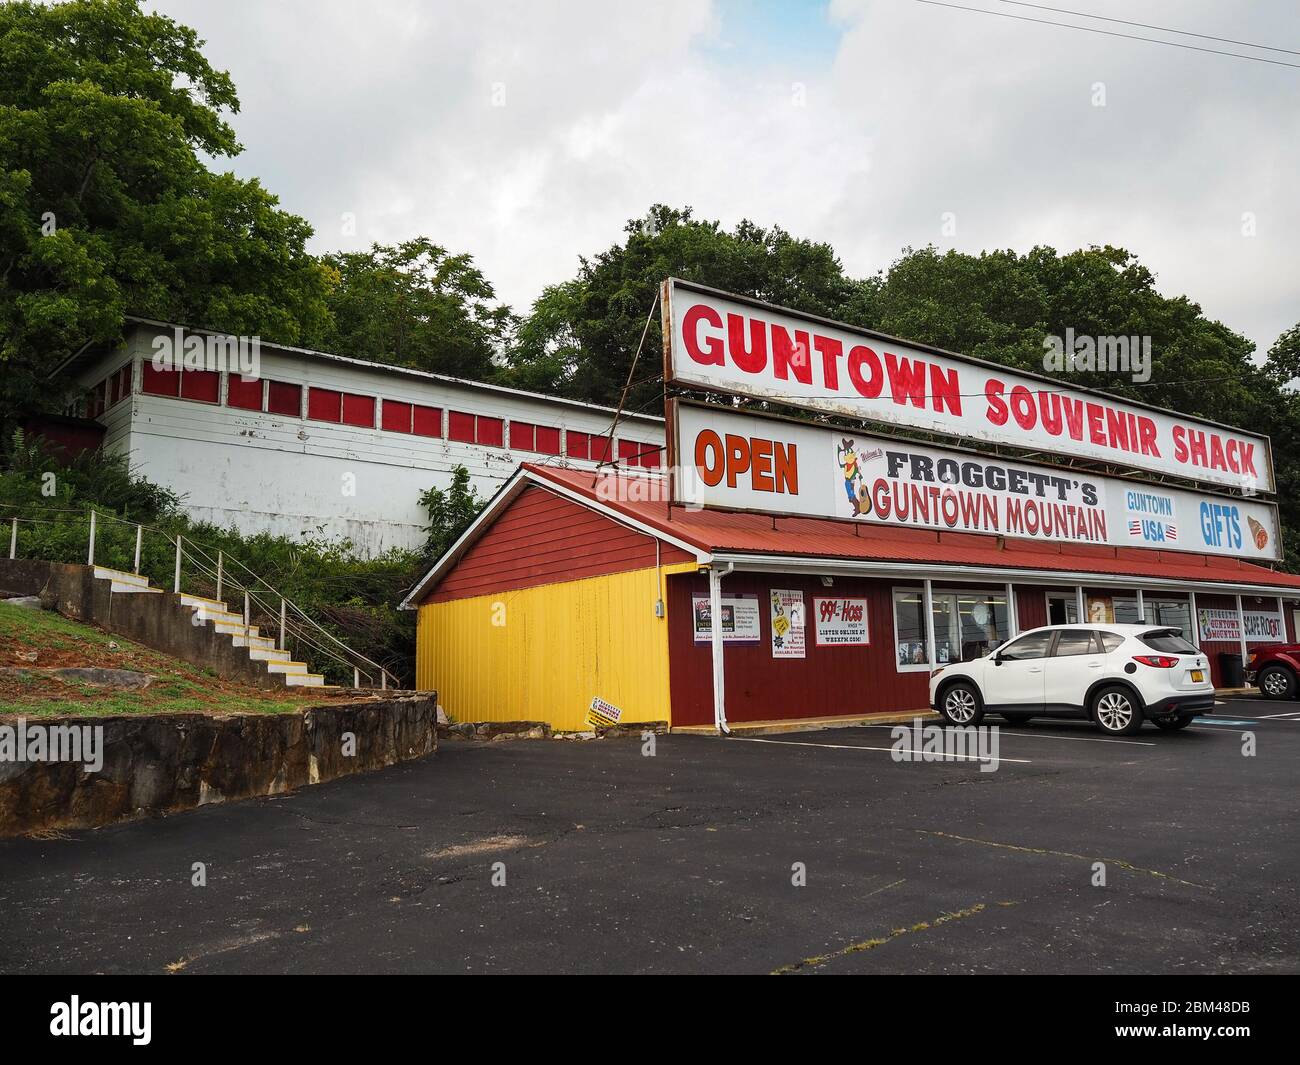 CAVE CITY, KENTUCKY - 21 LUGLIO 2019: Negozio di articoli da regalo e parcheggio per Froggett's Guntown Mountain, una zona di intrattenimento e divertimento a tema occidentale Foto Stock